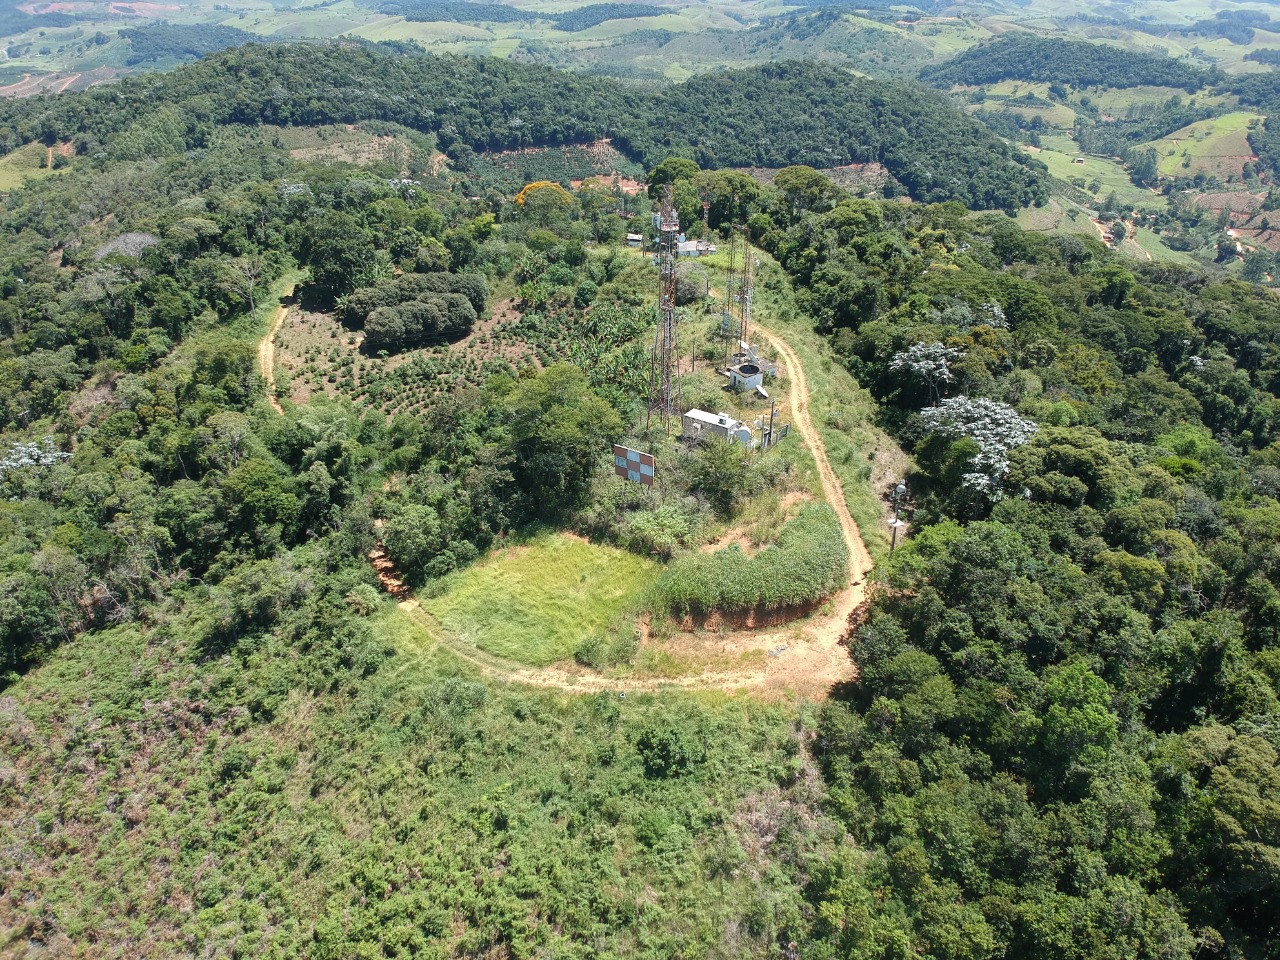 O Parque Natural Municipal Adelino José Jeveaux, criado em 2020, está sendo estruturado pela prefeitura de Guaçuí para atrair ainda mais turistas